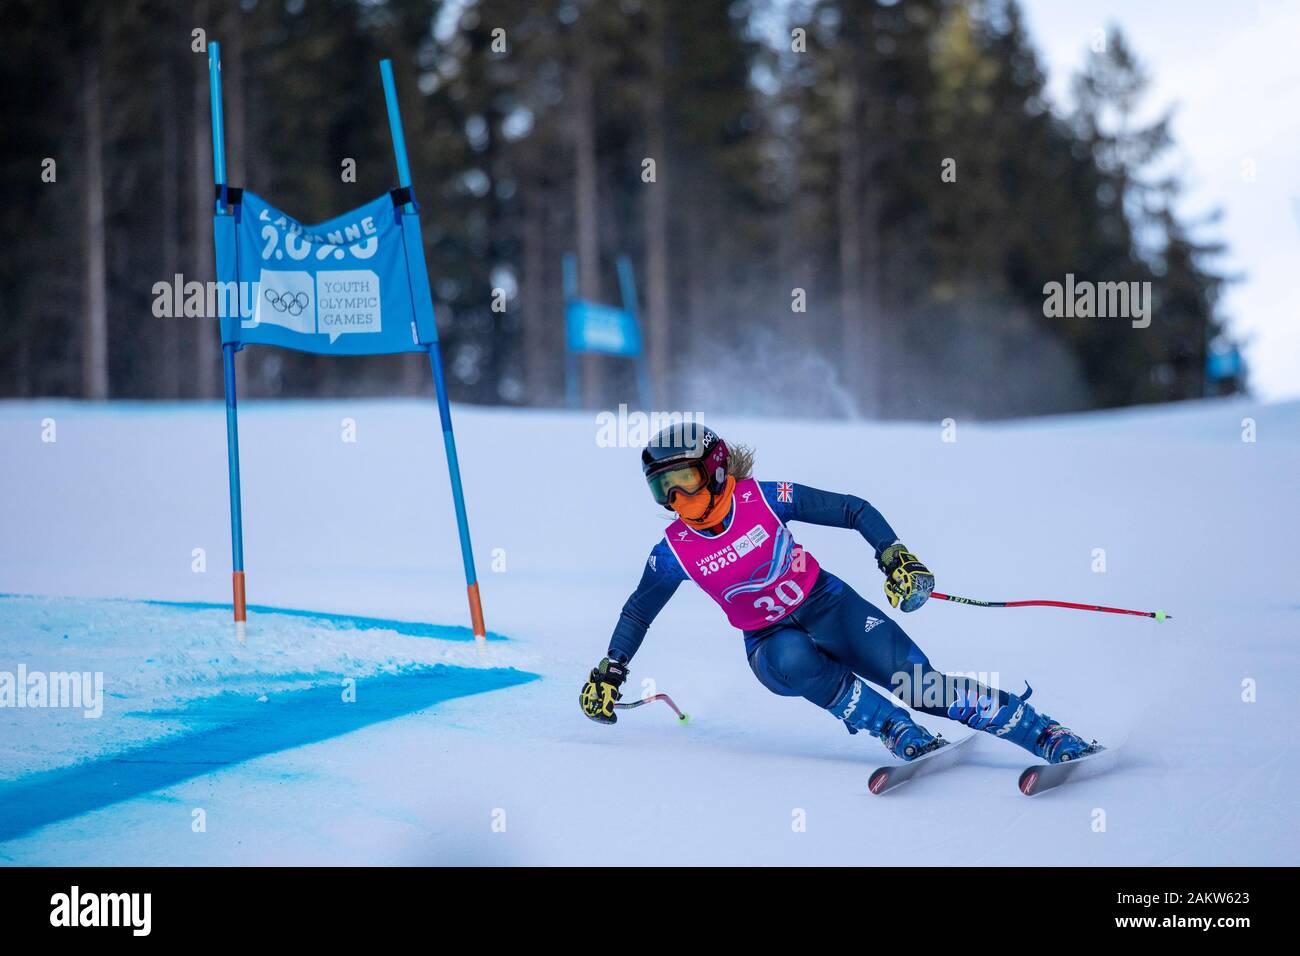 Team GB sciatore alpino, Daisi Daniels (17), durante il Lausanne 2020 Donna Super G Sci di discesa a Les Diablerets Alpine Center in Svizzera. Foto Stock